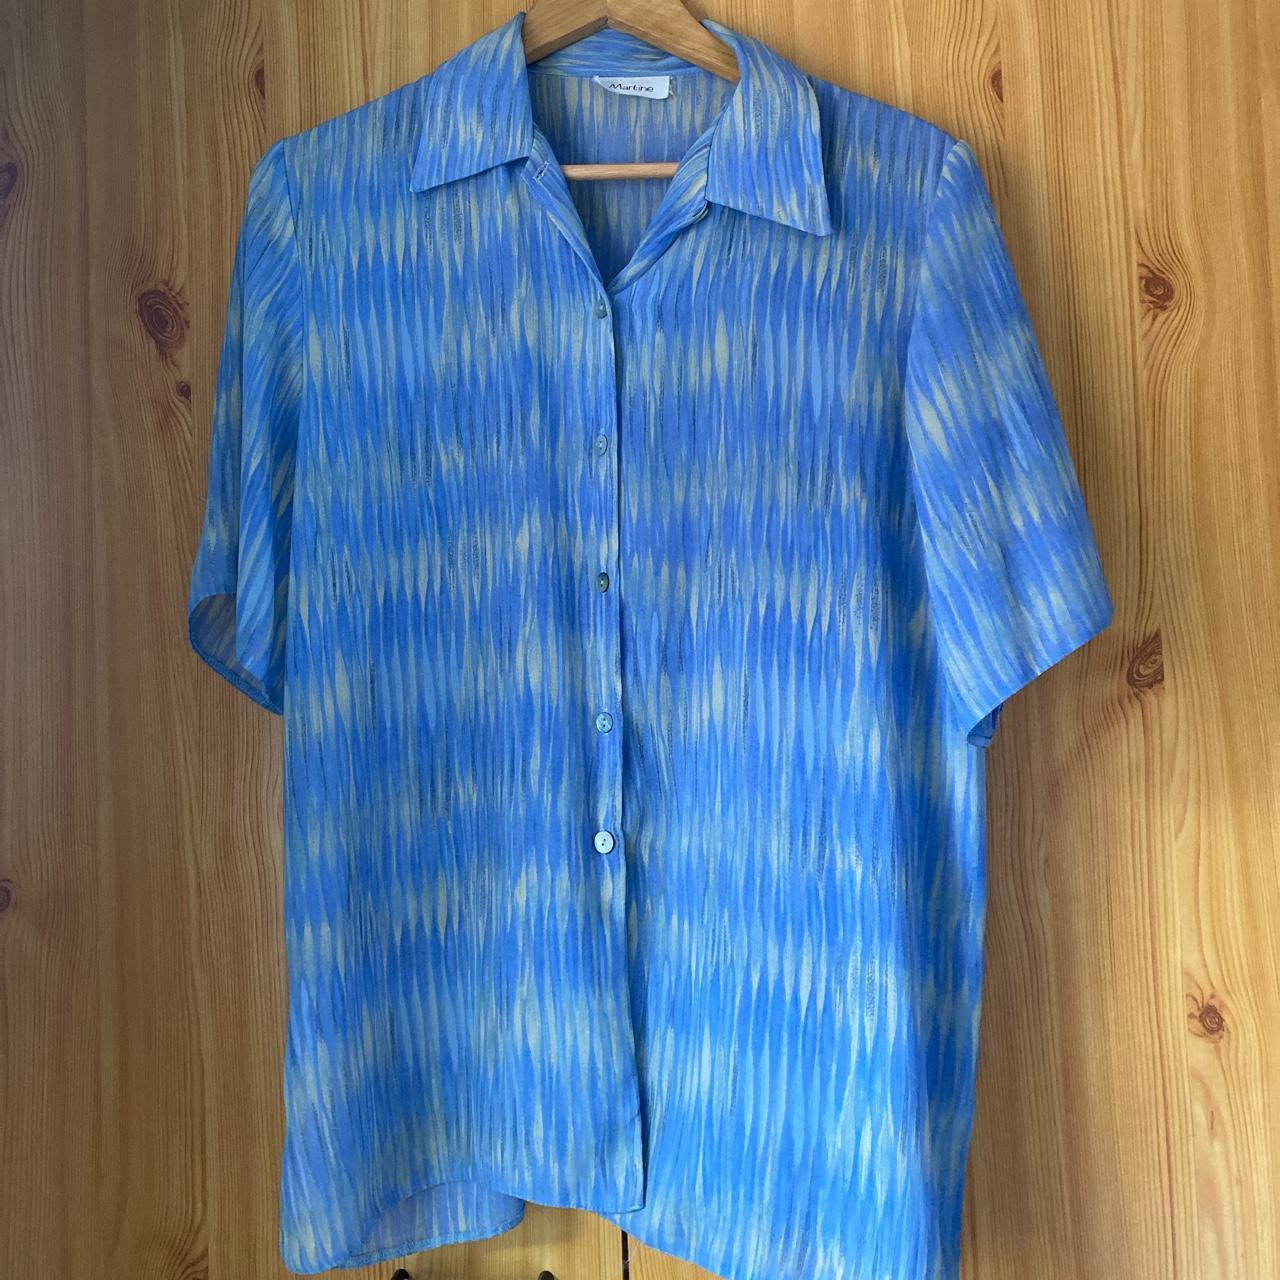 Gorgeous blue / yellow pattern summer shirt. Size:... - Depop